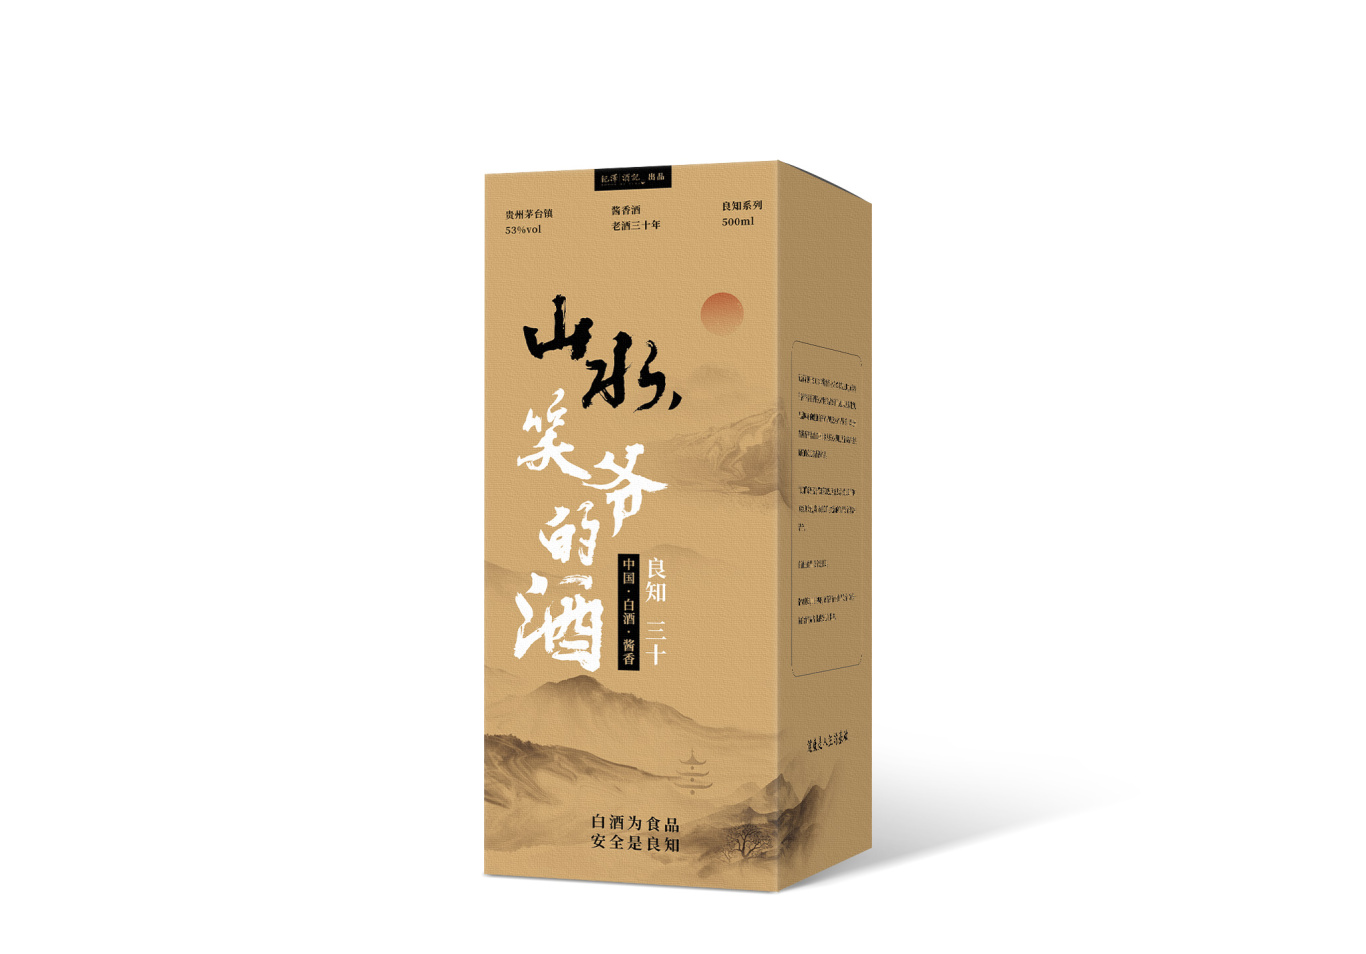 紀澤系列醬香酒包裝設計圖14